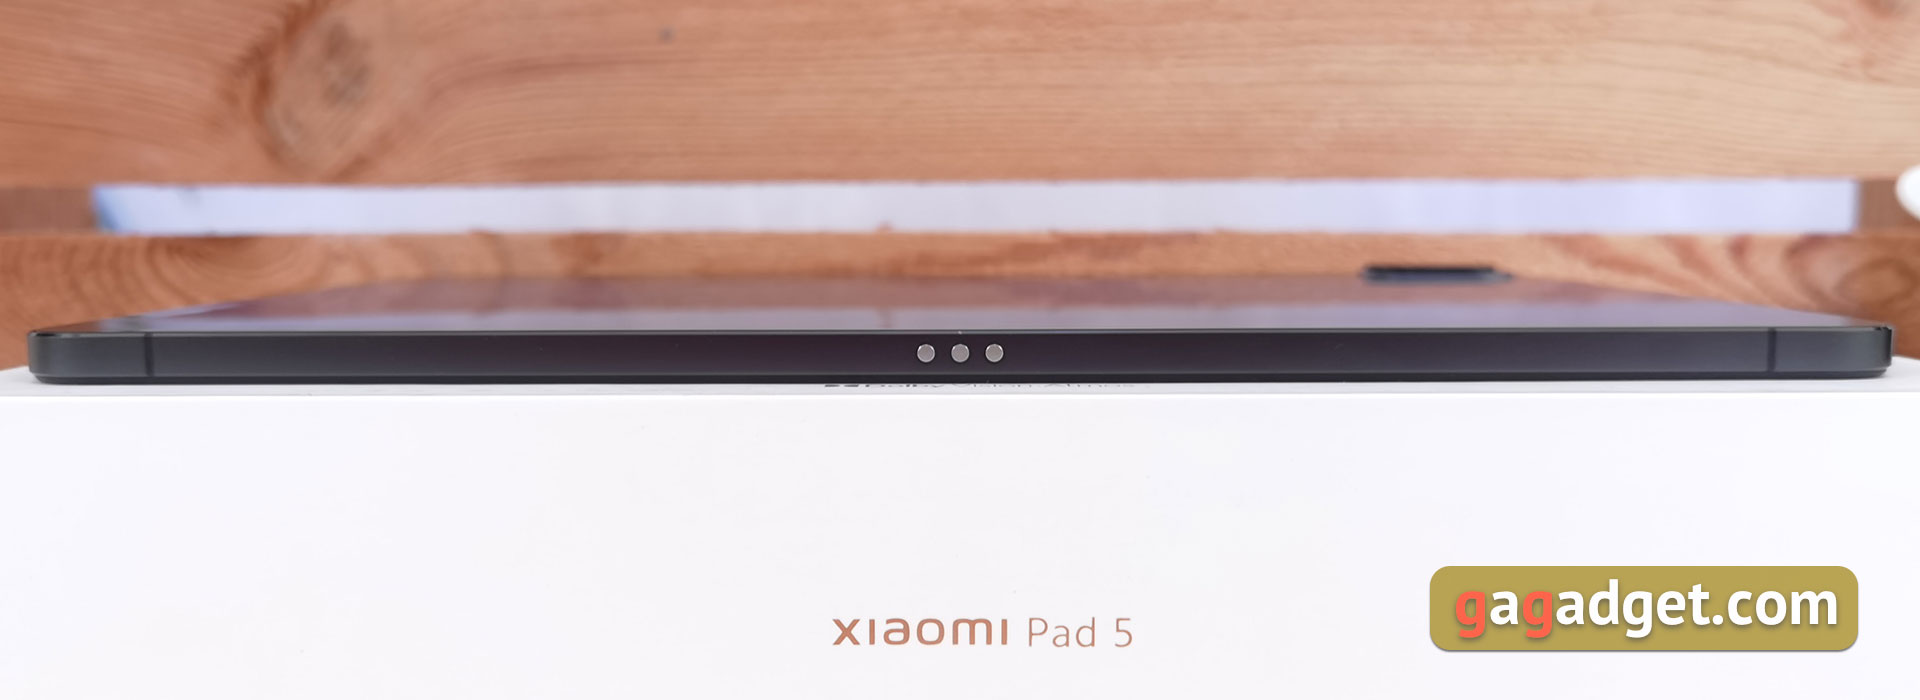 Xiaomi Pad 5 Test: Allesfresser von Content-11